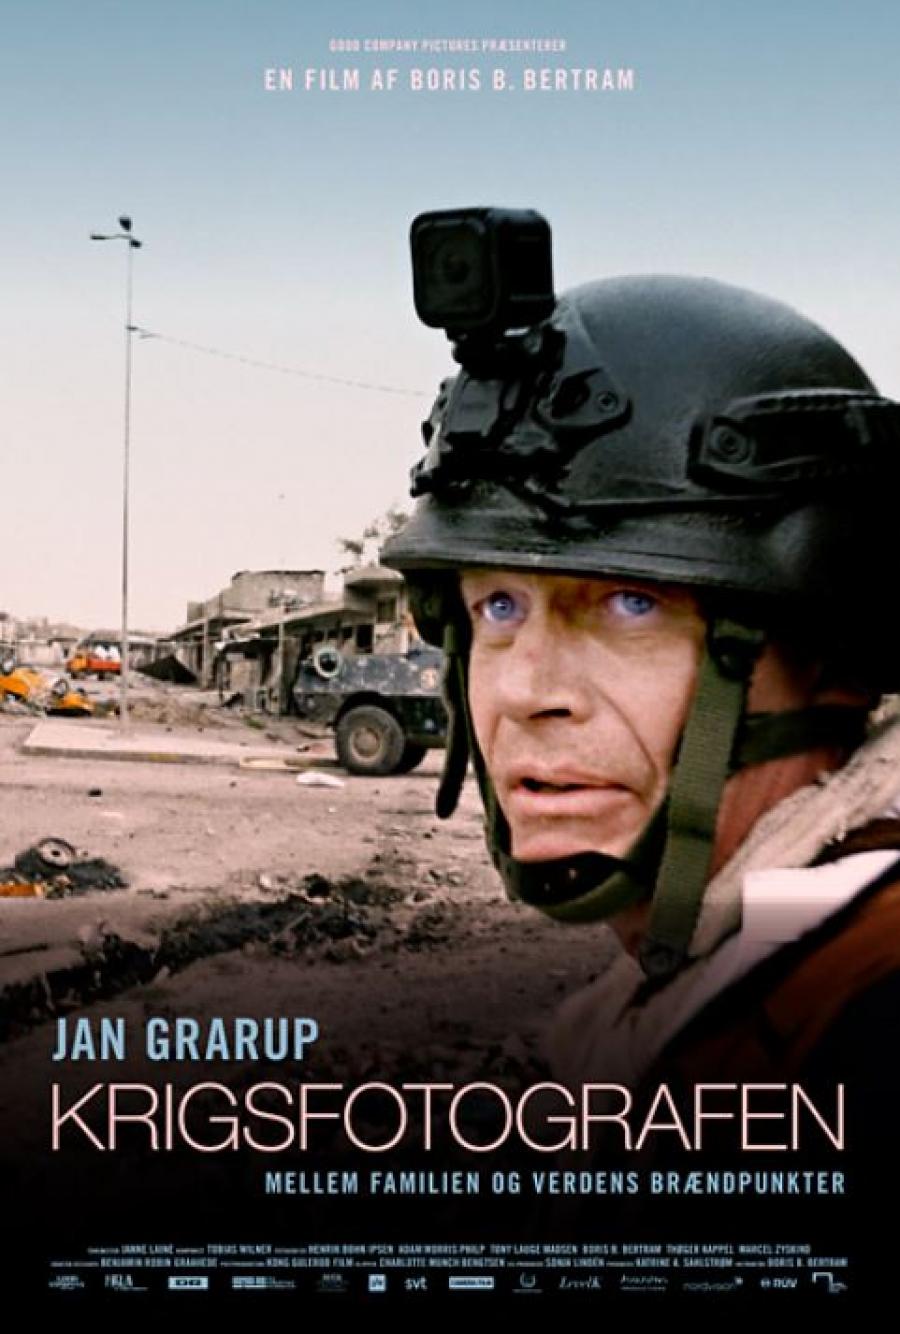 Plakat for filmen "Krigsfotografen"